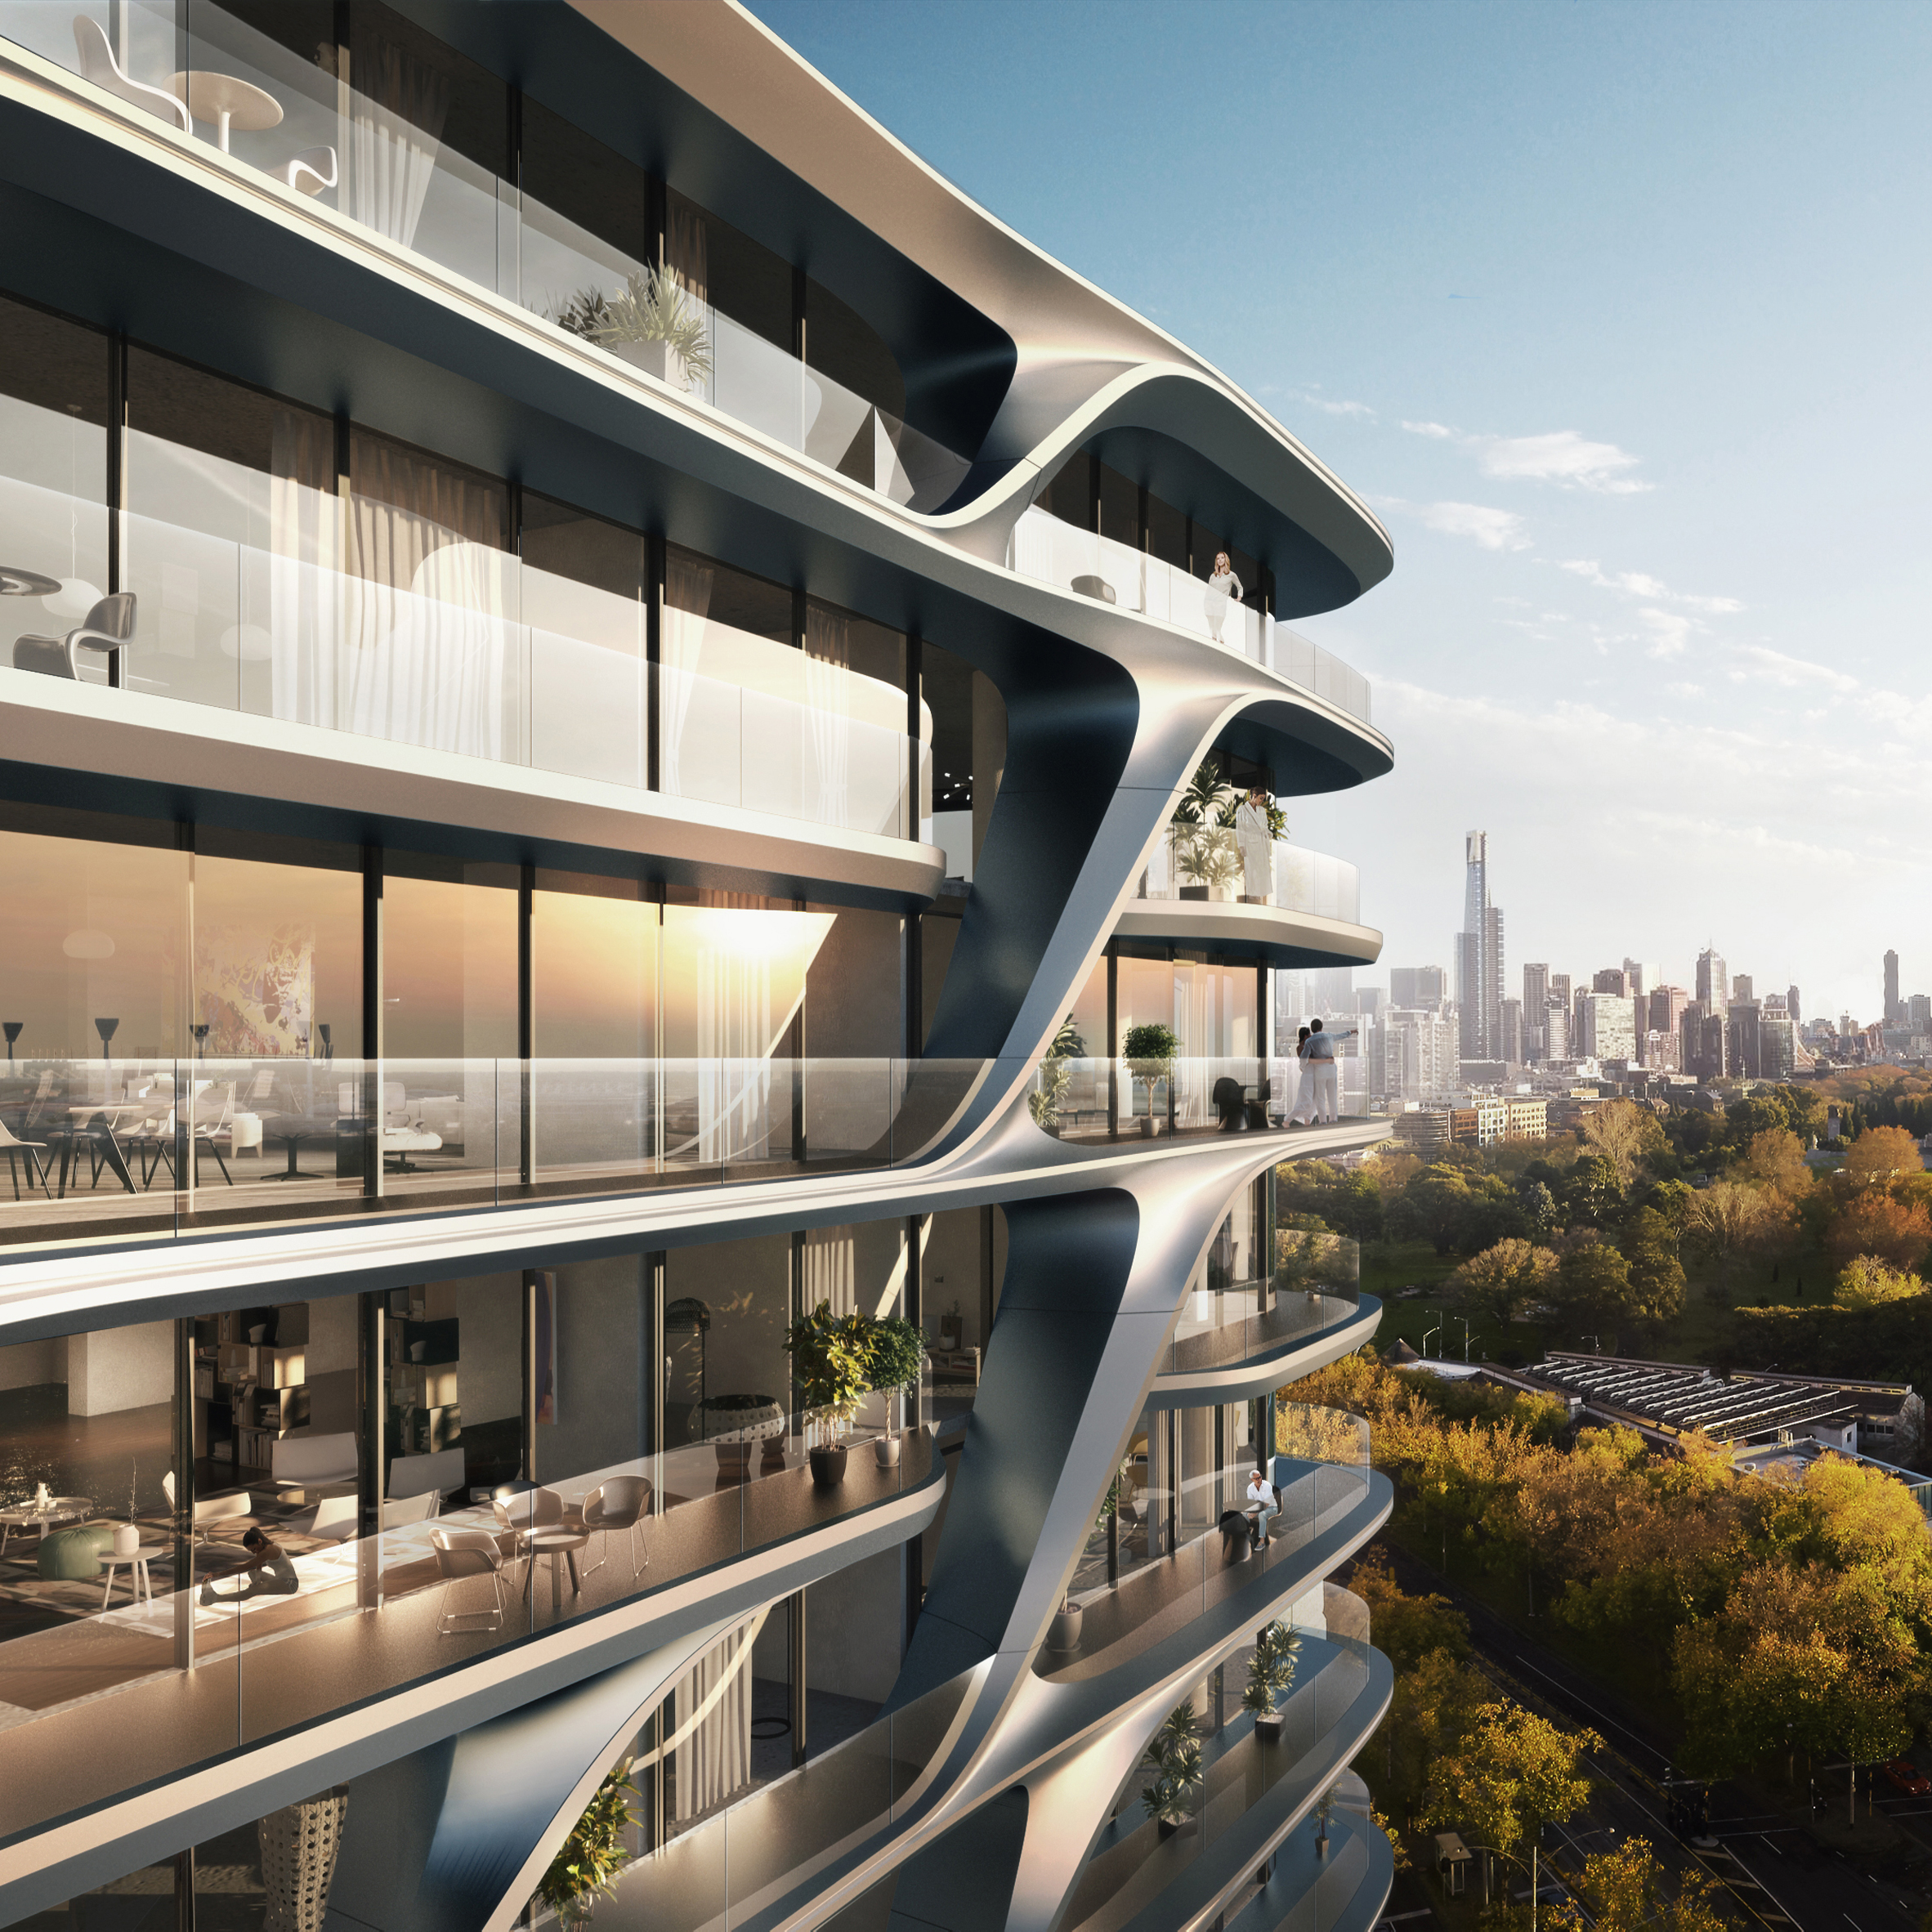 Mayfair hotel by Zaha Hadid Architects